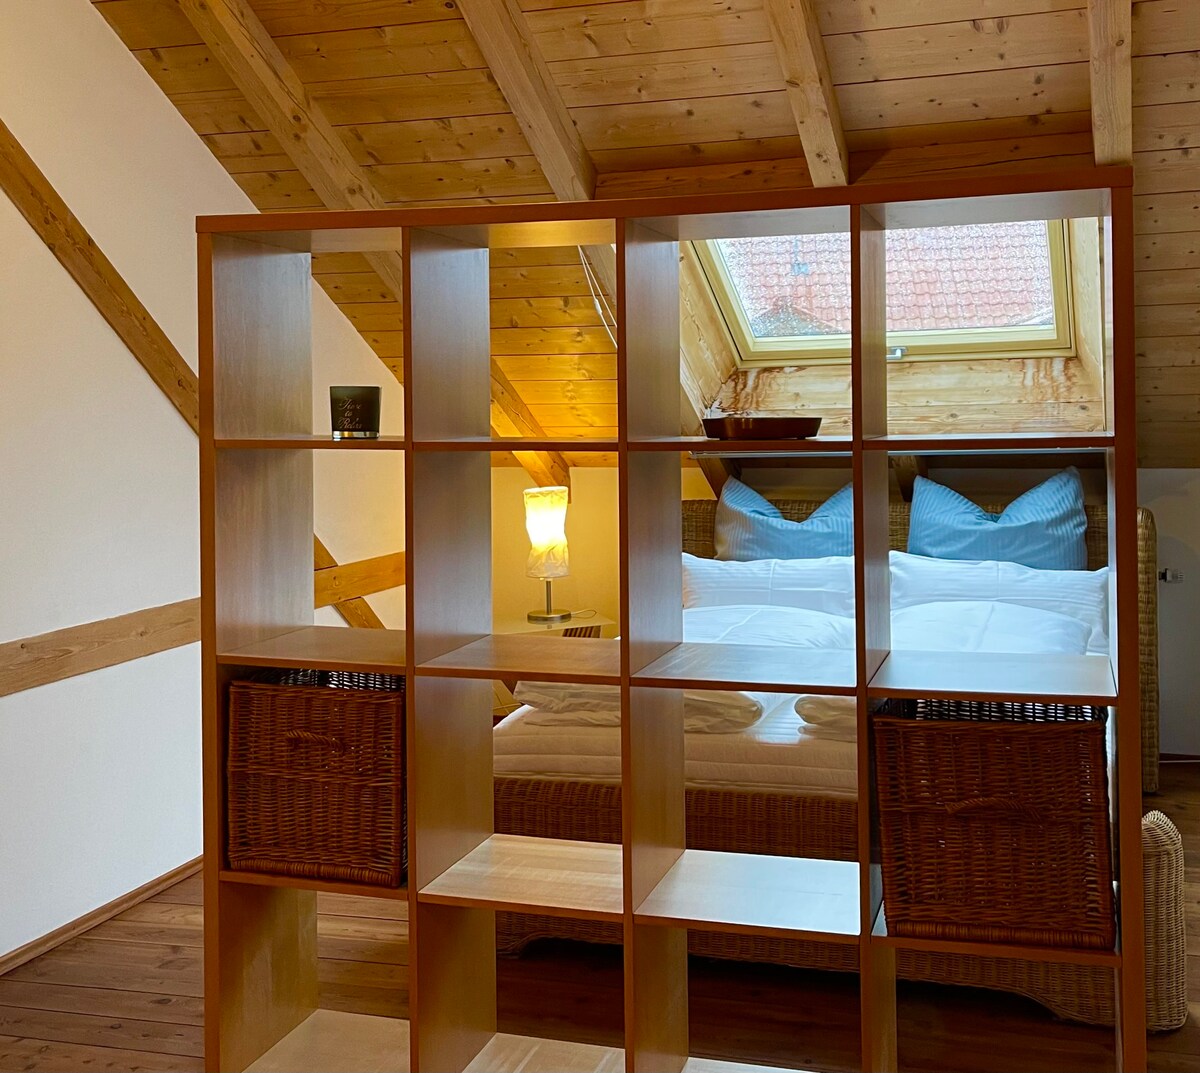 Schleichhof度假屋： 300平方米的舒适住宿体验